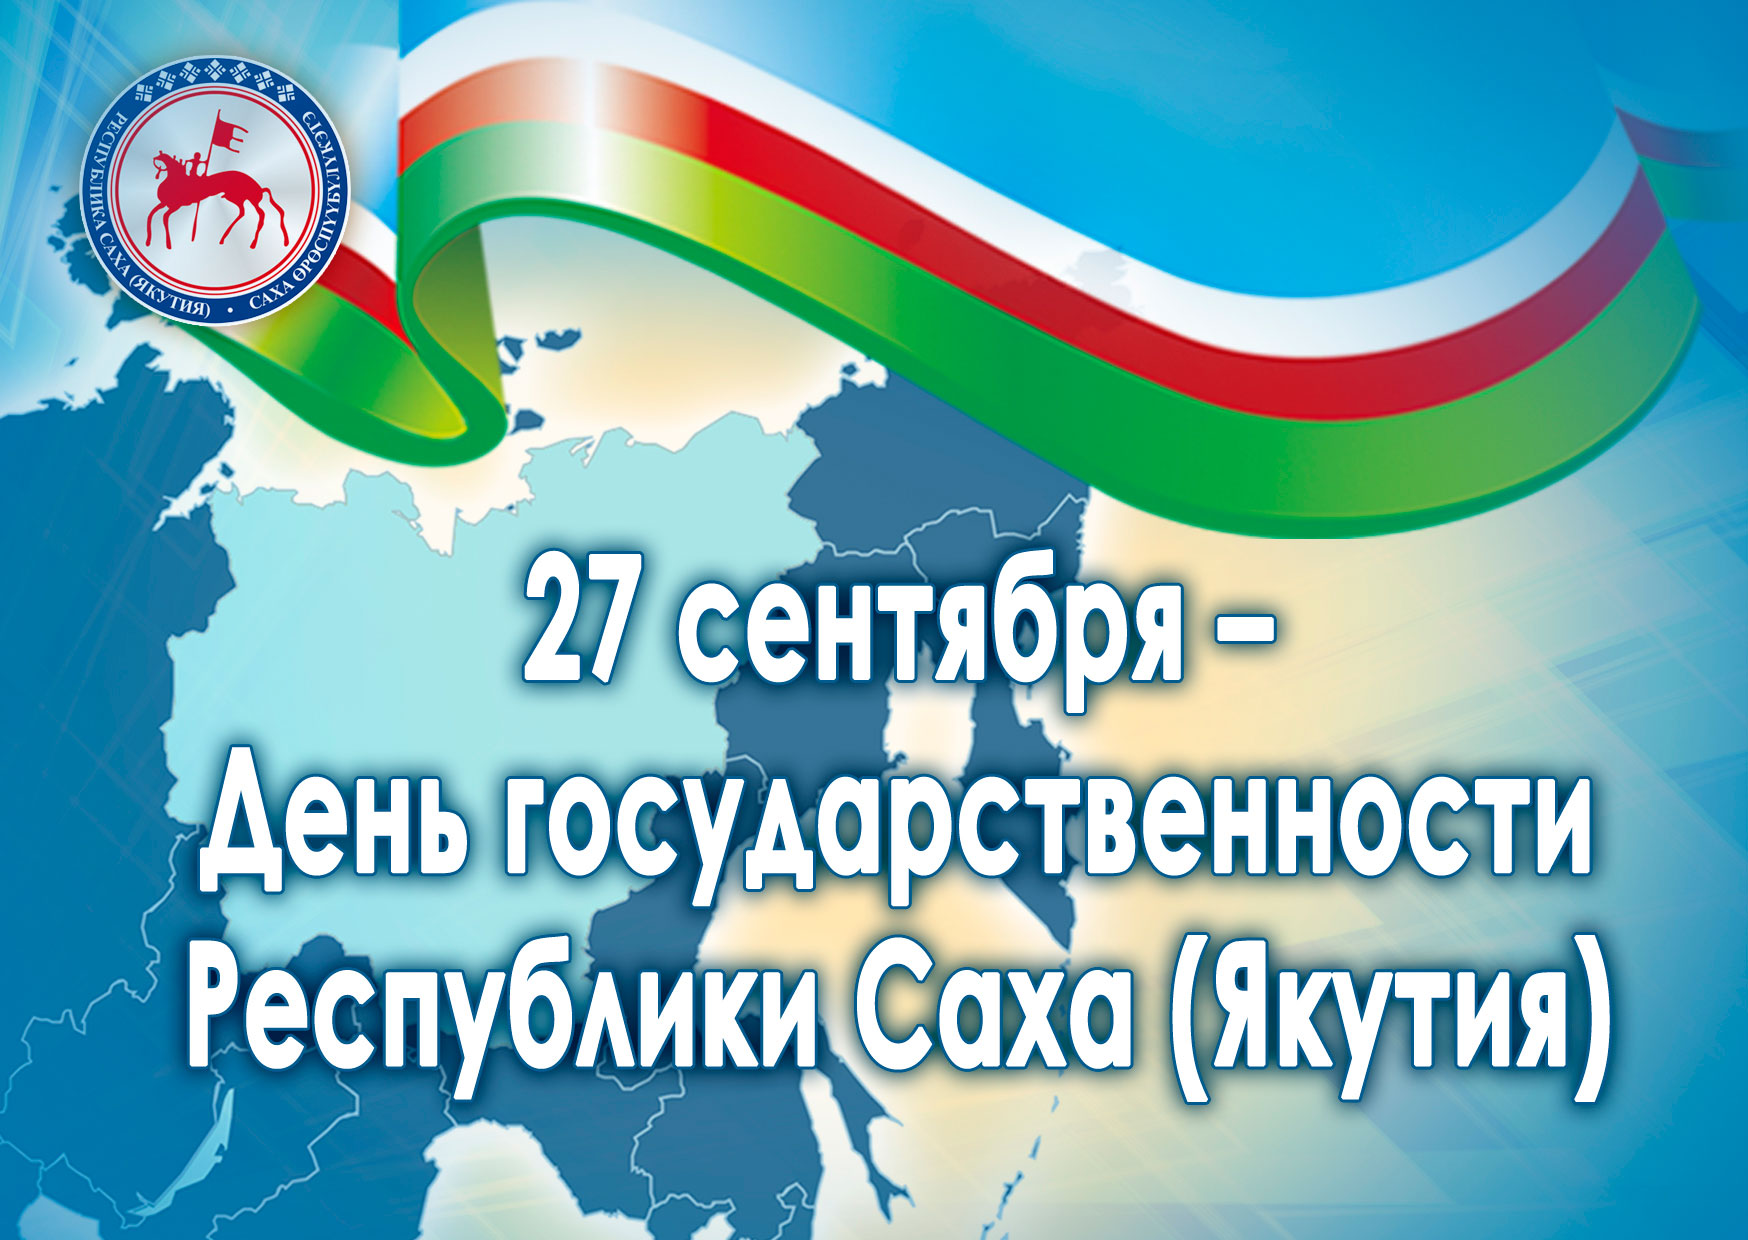 27 сентября - День государственности Республики Саха (Якутия)